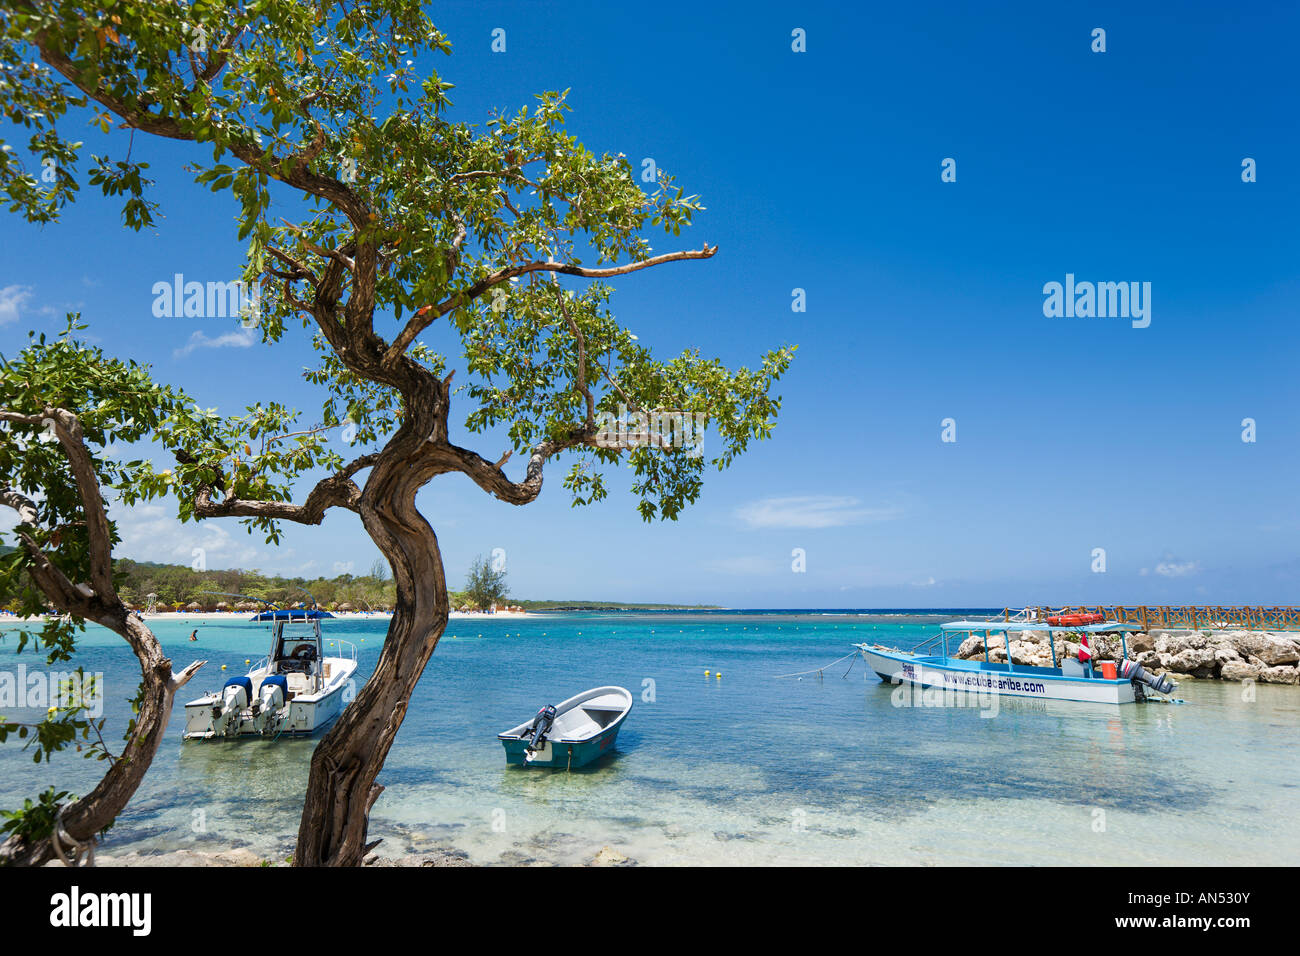 Beach at Gran Bahia Principe Resort, Runaway Bay, North Coast, Jamaica, Caribbean, West Indies Stock Photo